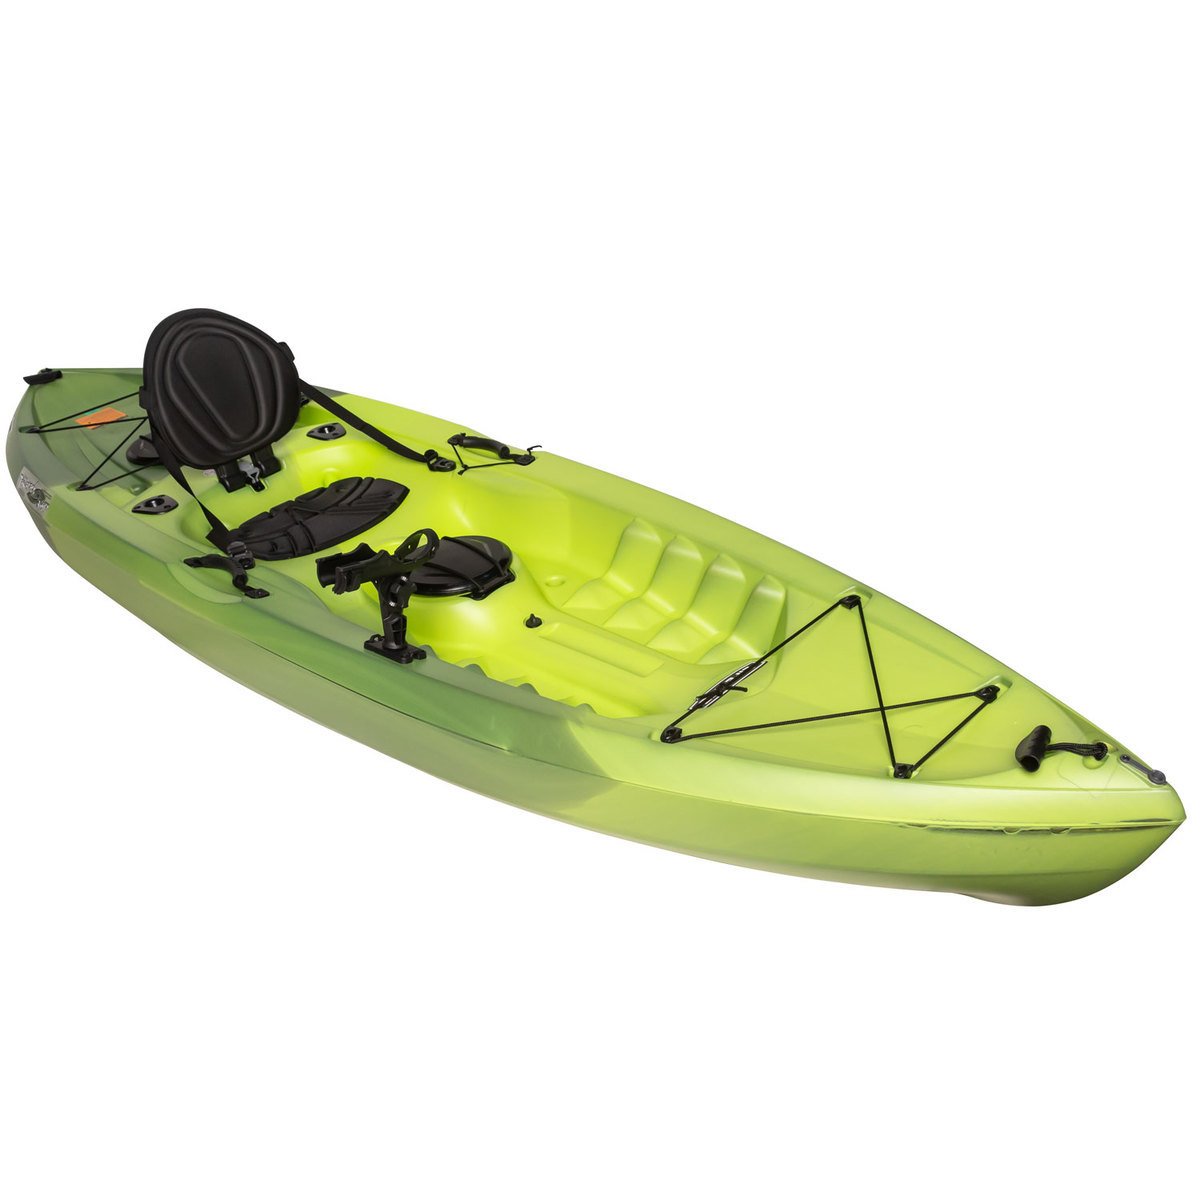 Lifetime Tamarack Angler: The $260 Budget Kayak